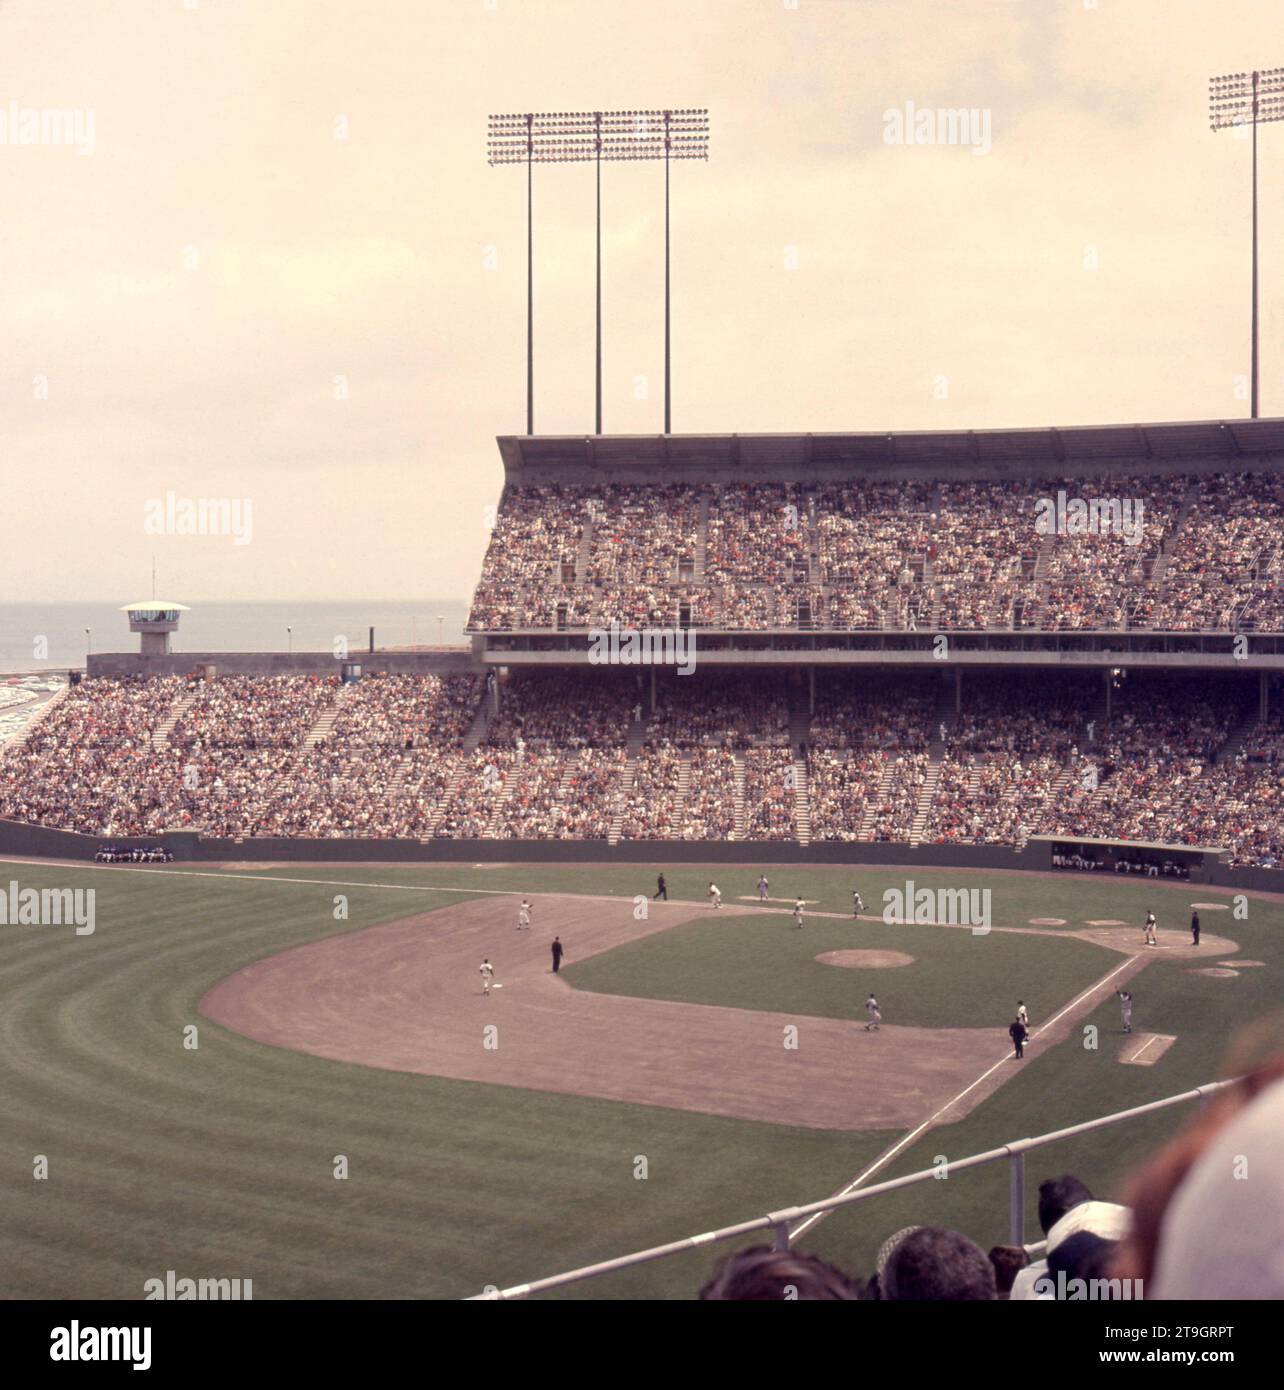 SAN FRANCISCO, CA - 21 MAI : vue générale du match entre les Dodgers de Los Angeles et les Giants de San Francisco lors d'un match MLB le 21 mai 1961 au Candlestick Park à San Francisco, en Californie. (Photo de Hy Peskin) Banque D'Images